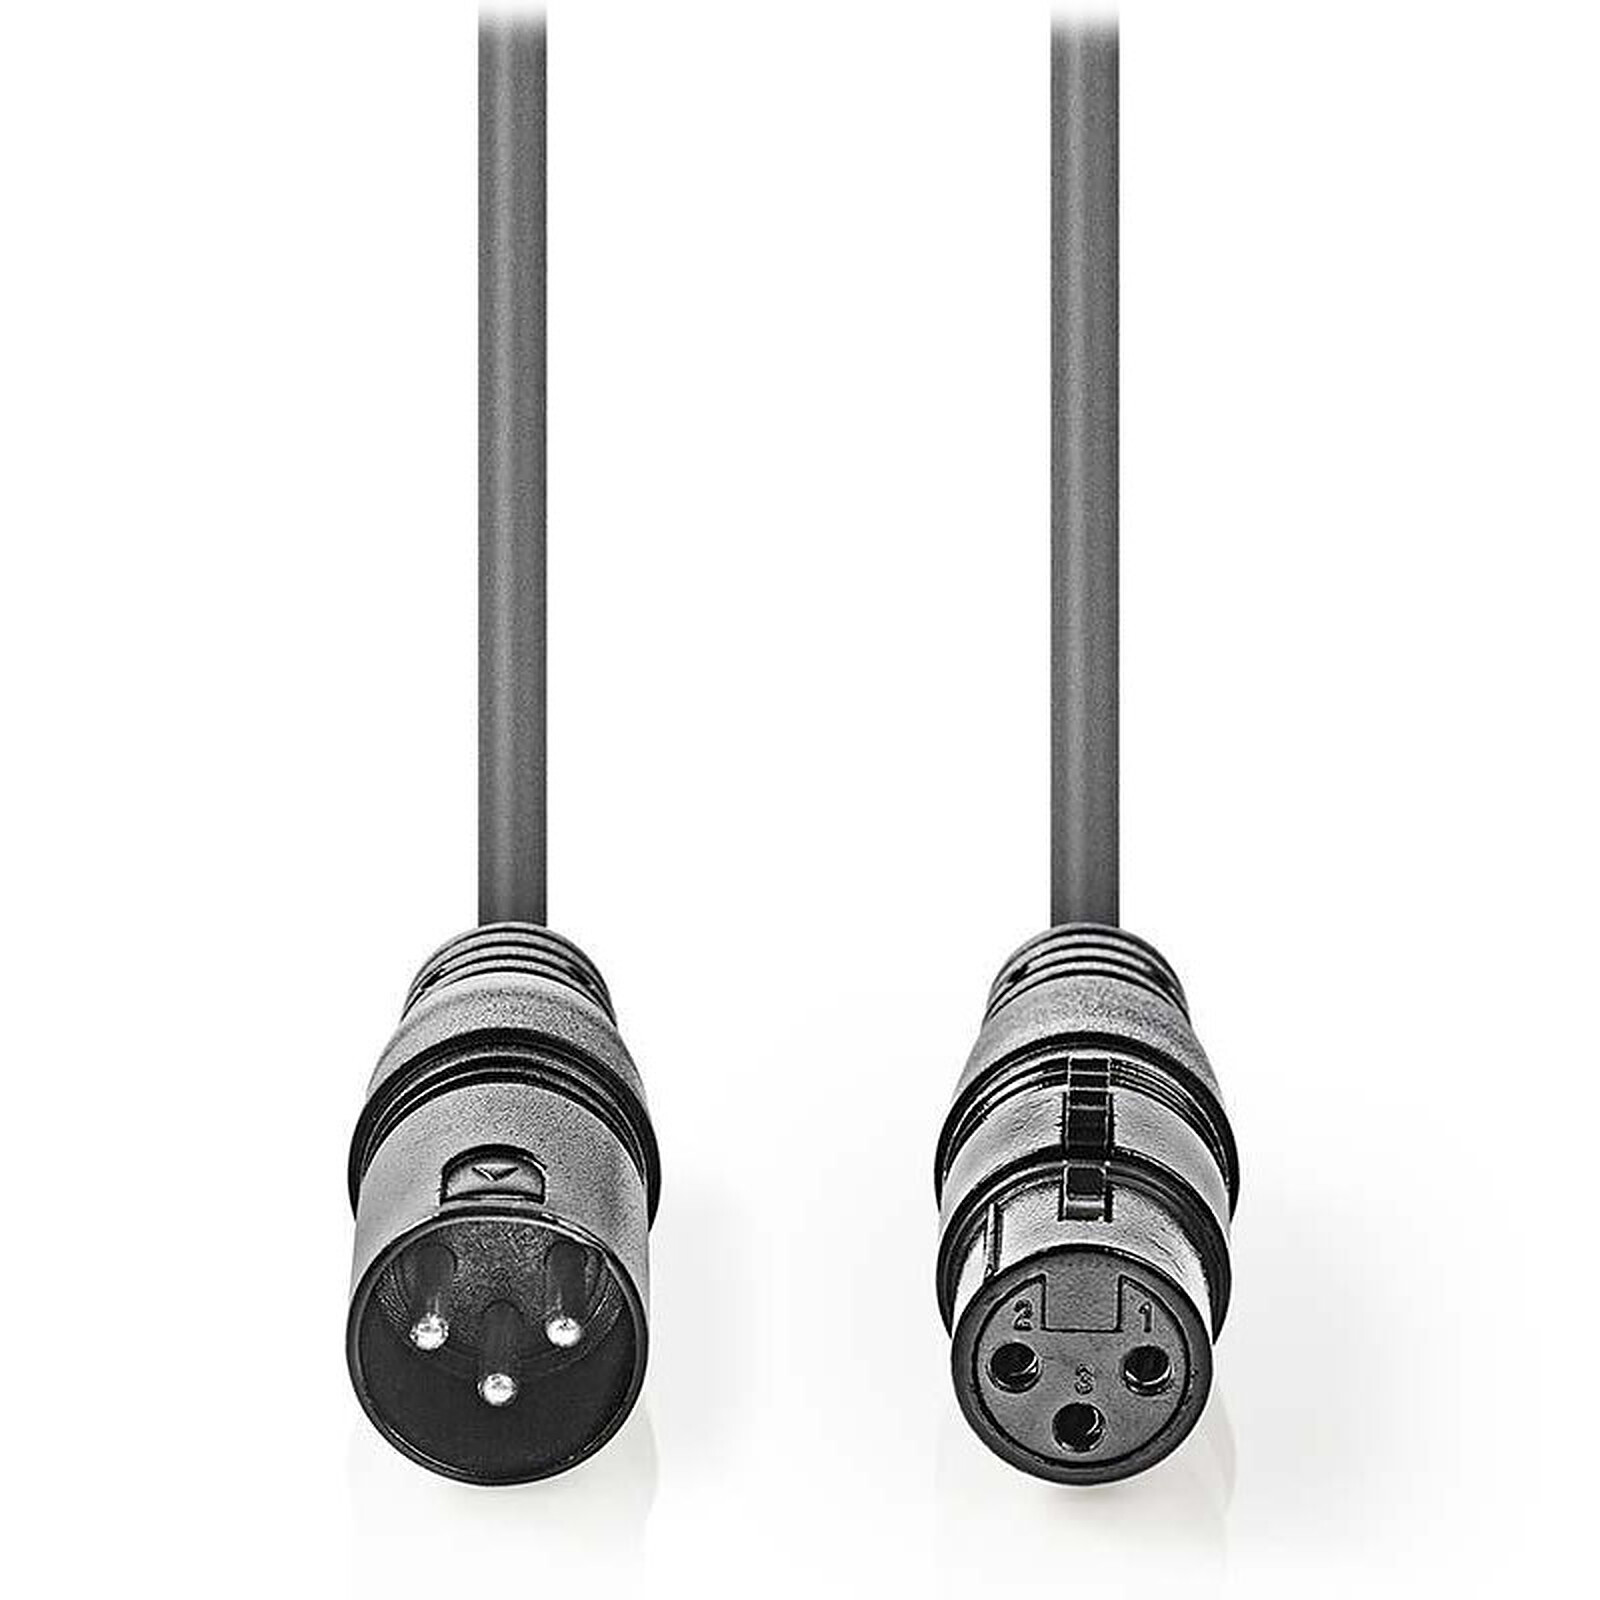 Sweex Adaptateur Stéréo XLR/Jack 6.35 mm Mâle/Male - Adaptateur audio -  Garantie 3 ans LDLC